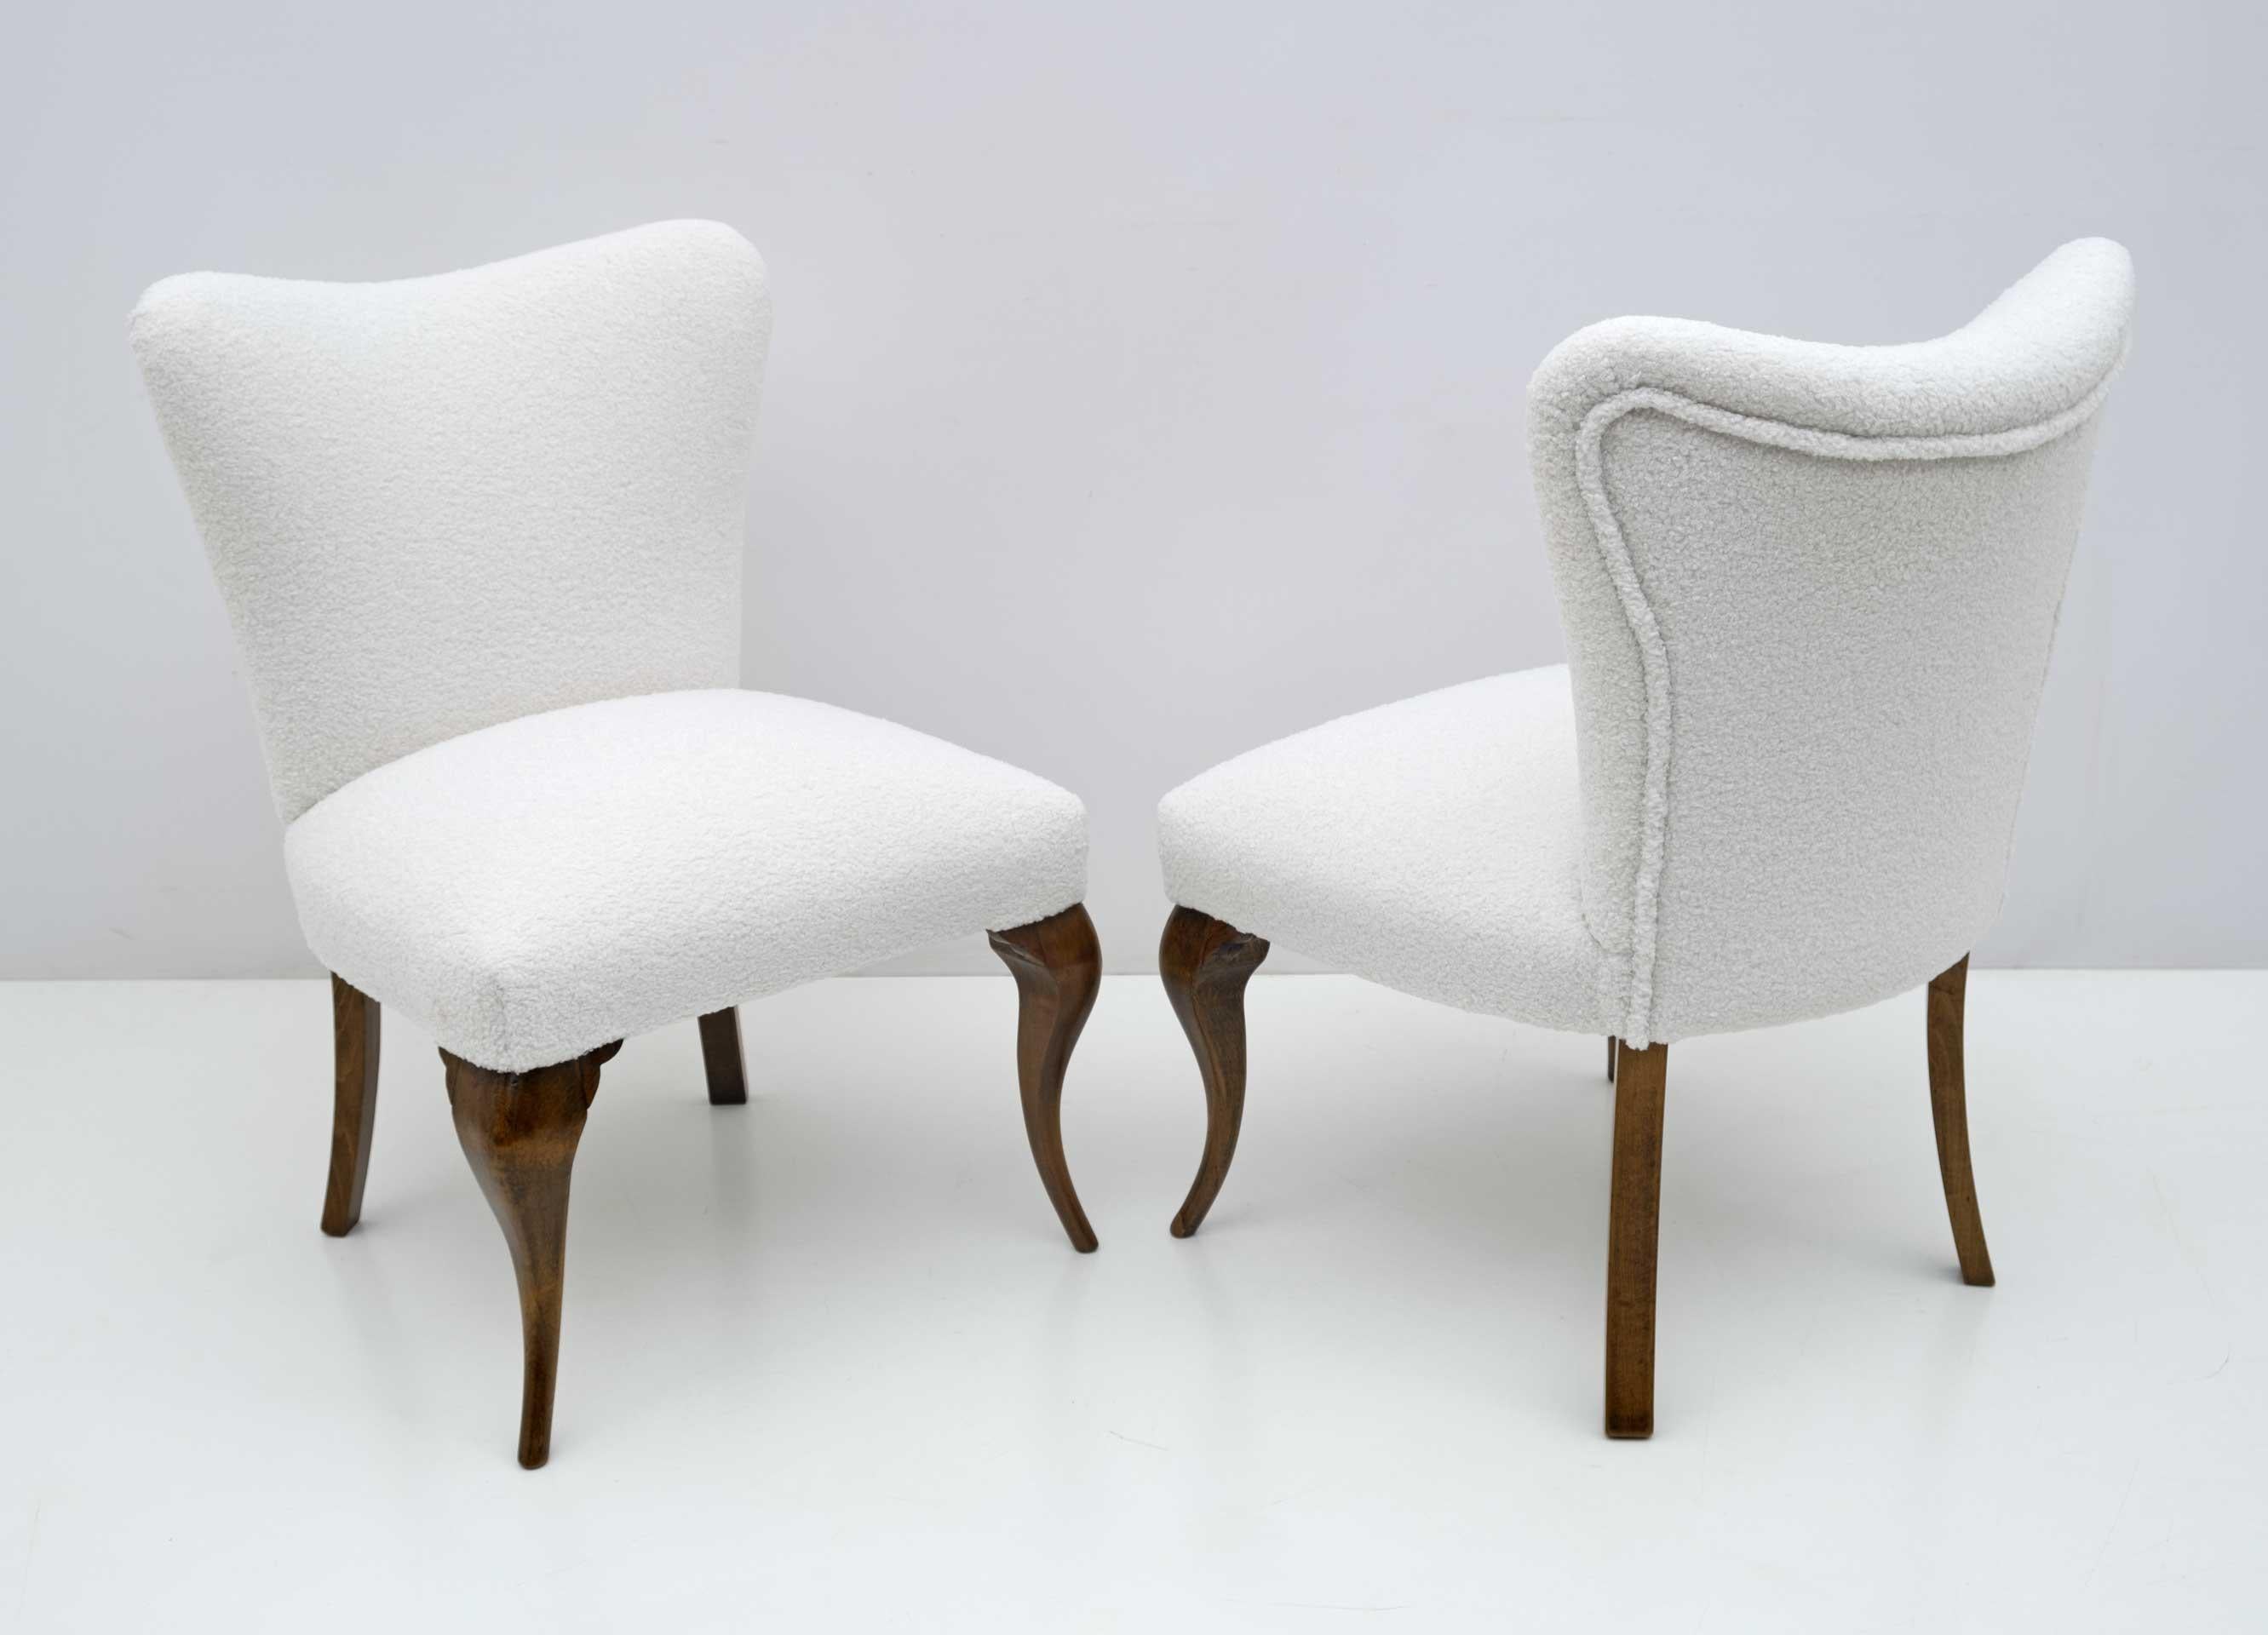 Paire de fauteuils de style Chippendale, production italienne des années 1940, entièrement restaurés et tapissés de tissu Boucle. Ils s'intègrent très bien dans une chambre ou un salon.